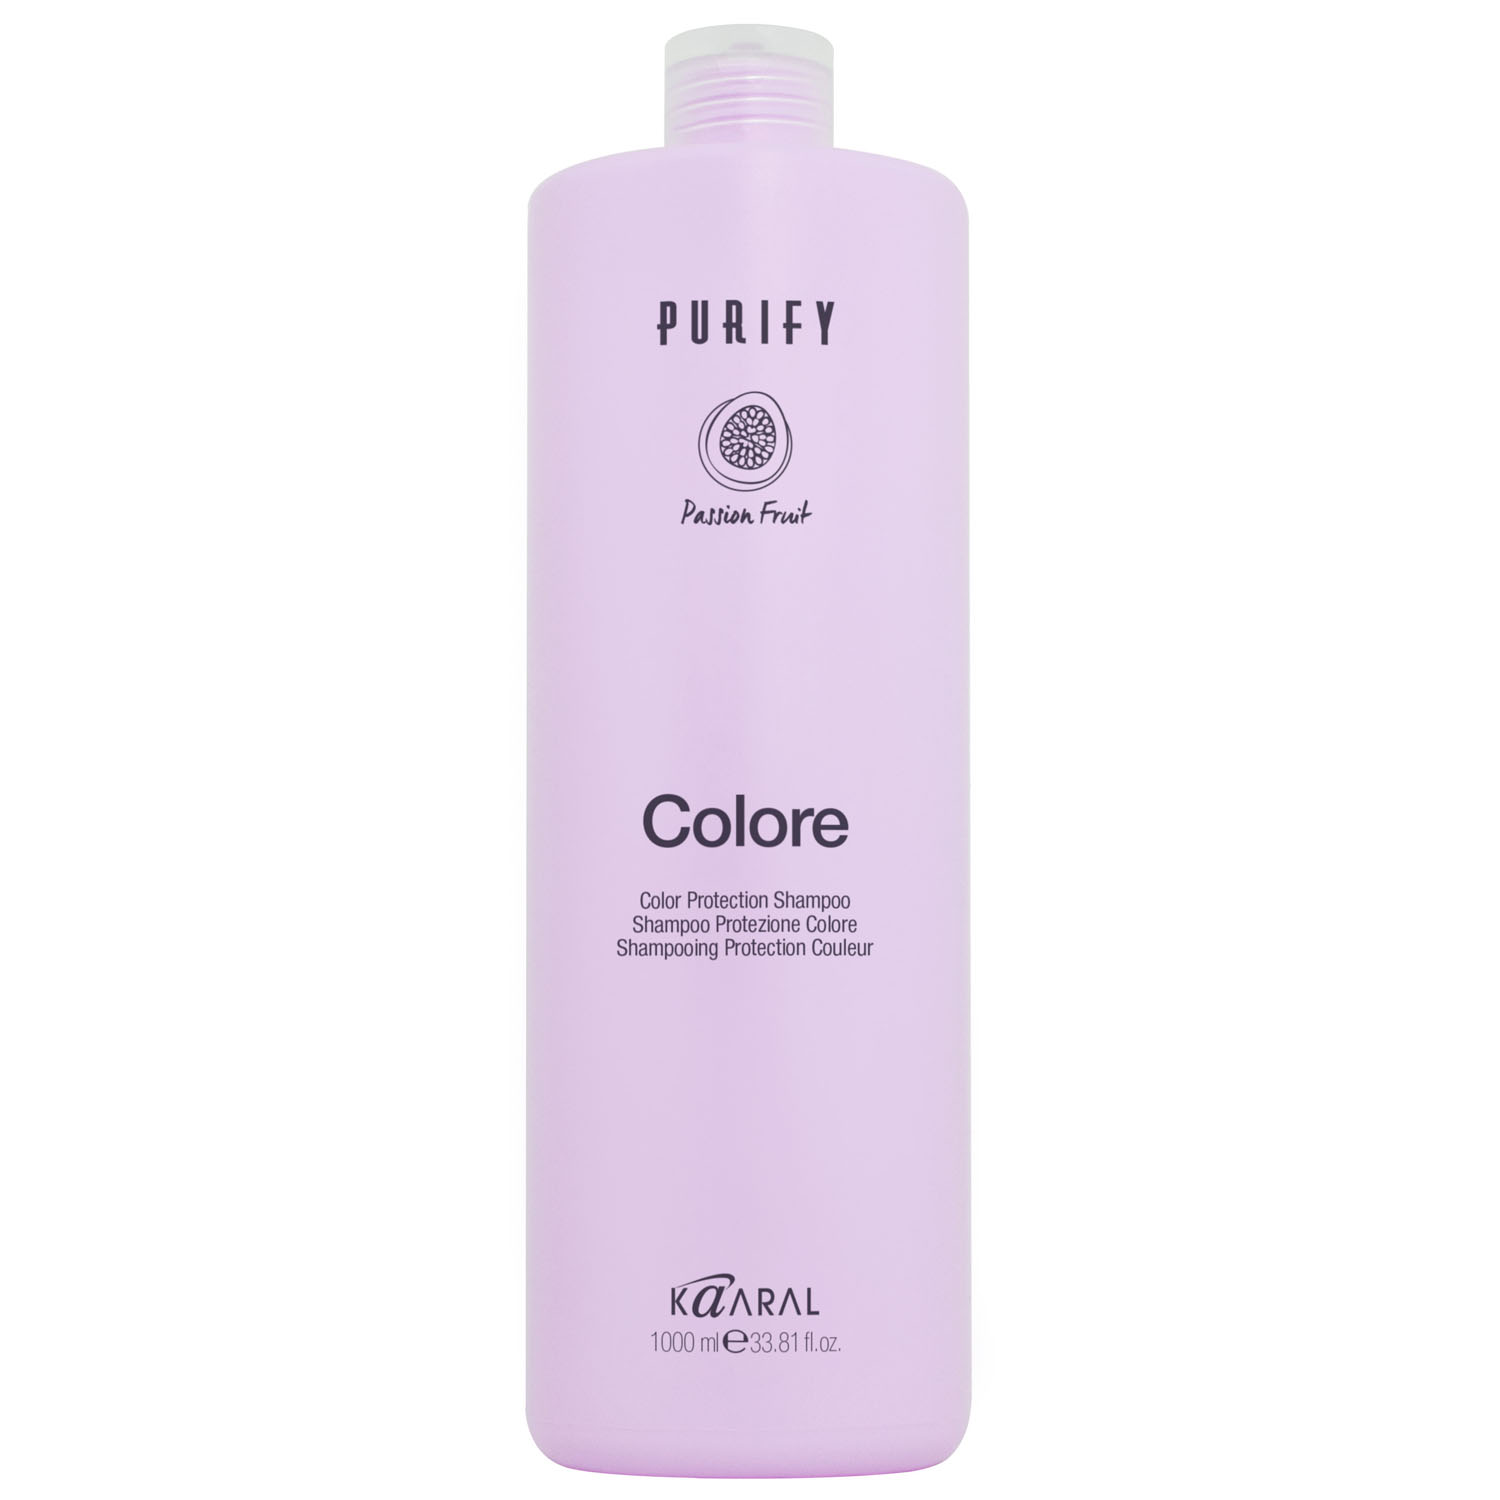 картинка Шампунь для окрашенных волос на основе фруктовых кислот ежевики Purify Colore, 1000 мл от официального интернет-магазина Каарал